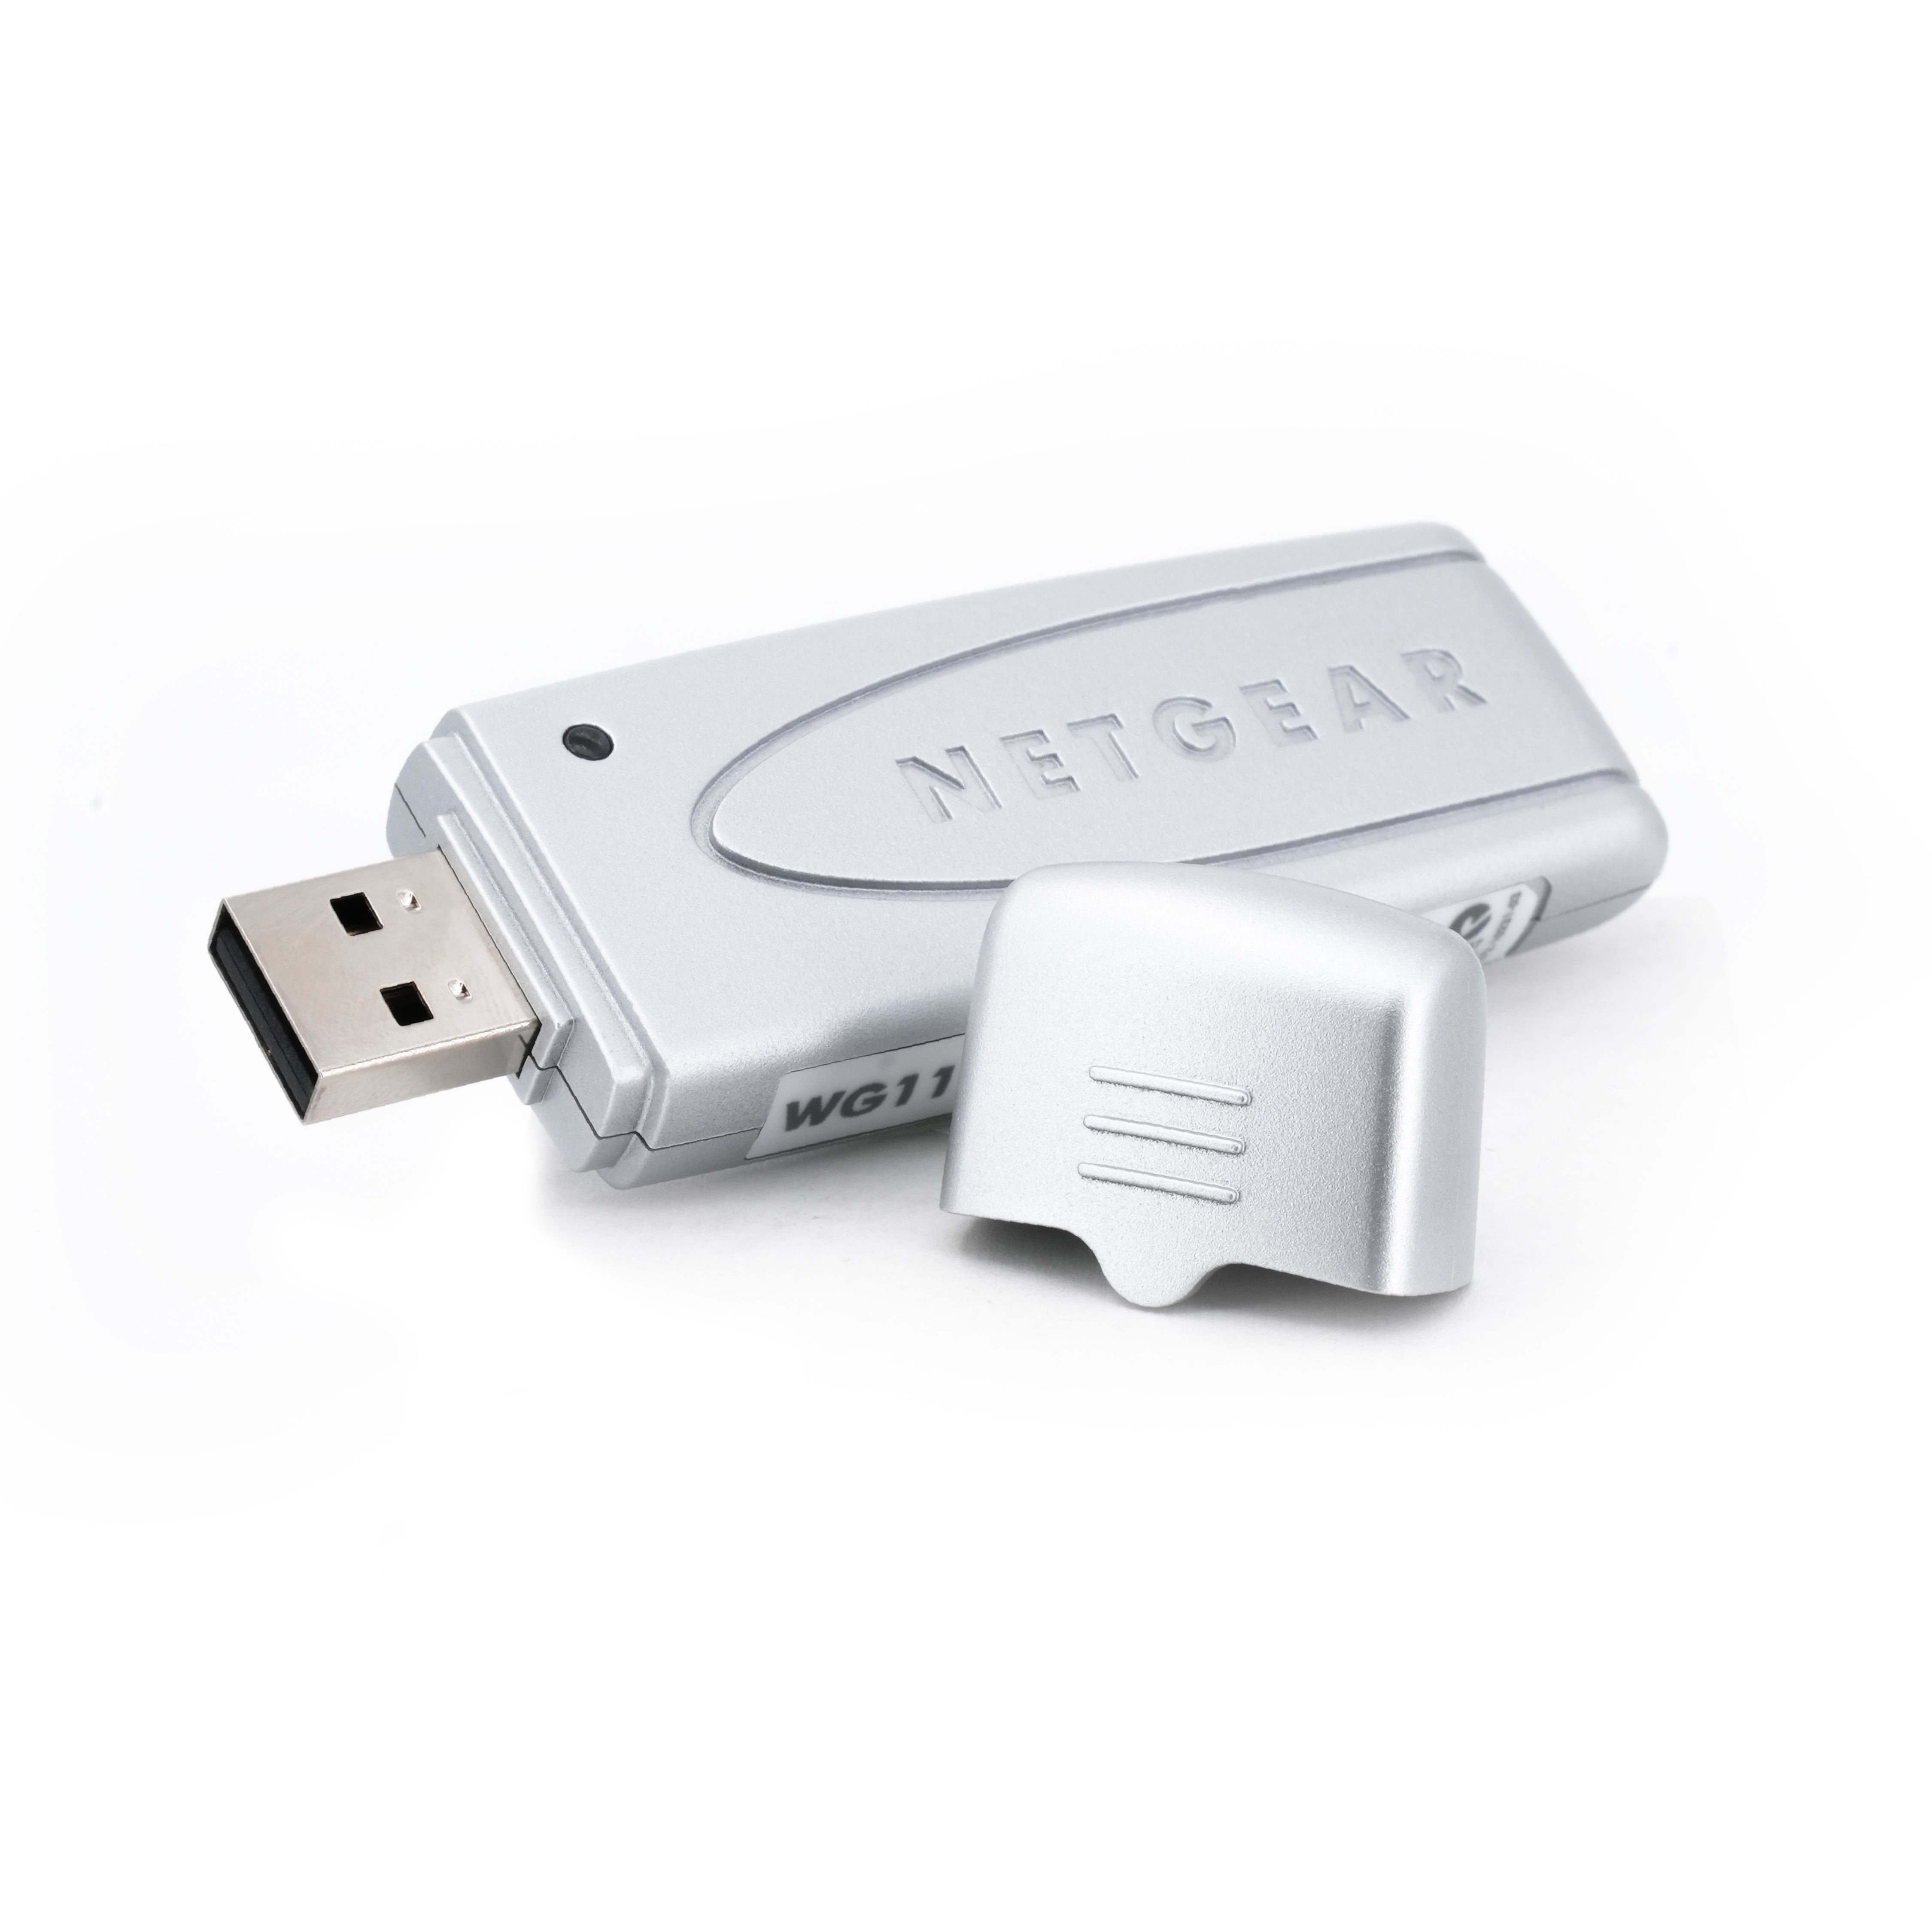 Netgear 54 MBit/s Wireless USB 2.0 Stick 802.11g WLAN Adapter WiFi Dongle